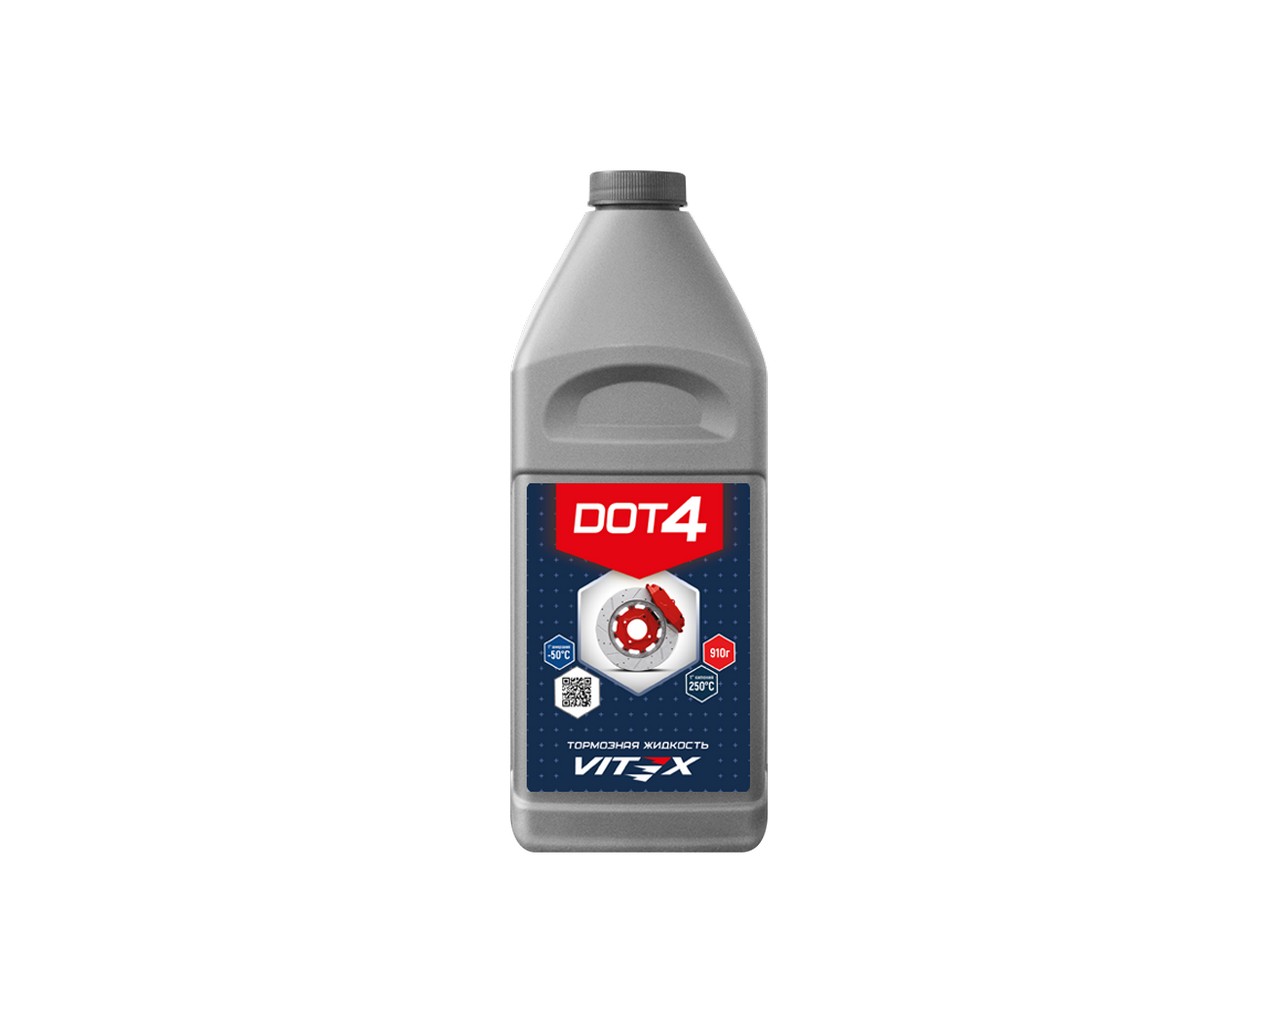 Жидкость тормозная ДОТ-4 (910г) (VITEX)